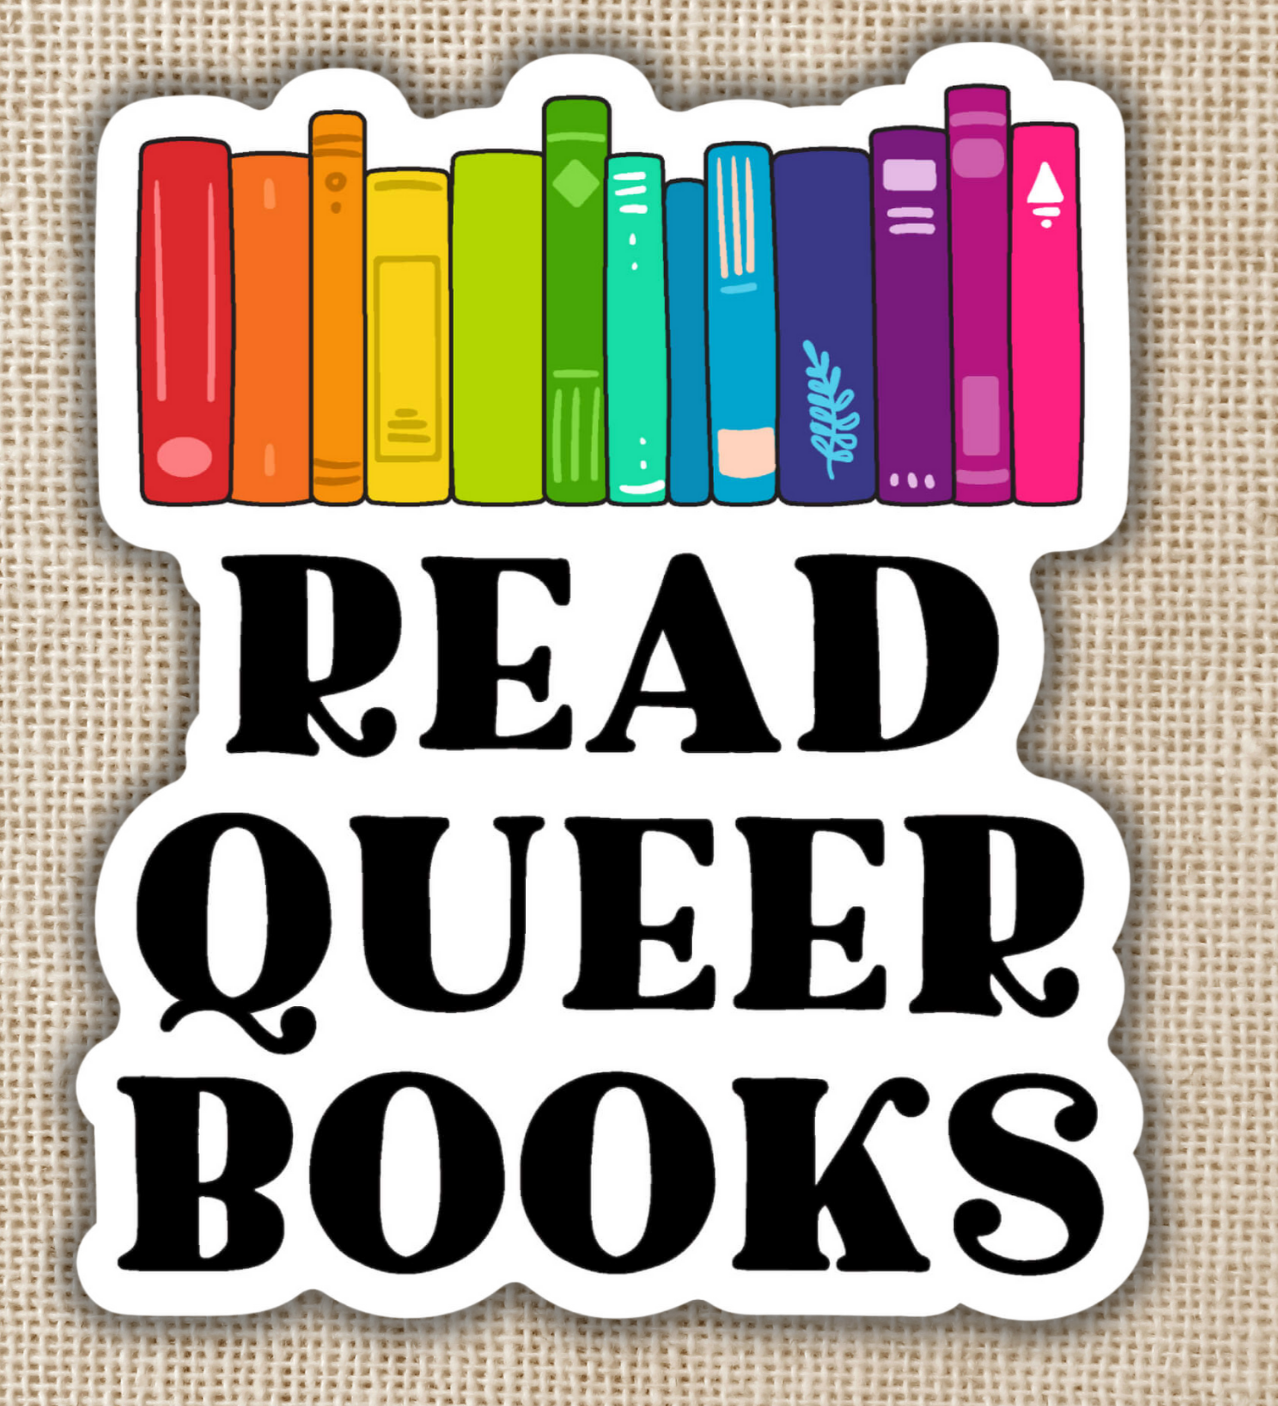 Read Queer Books